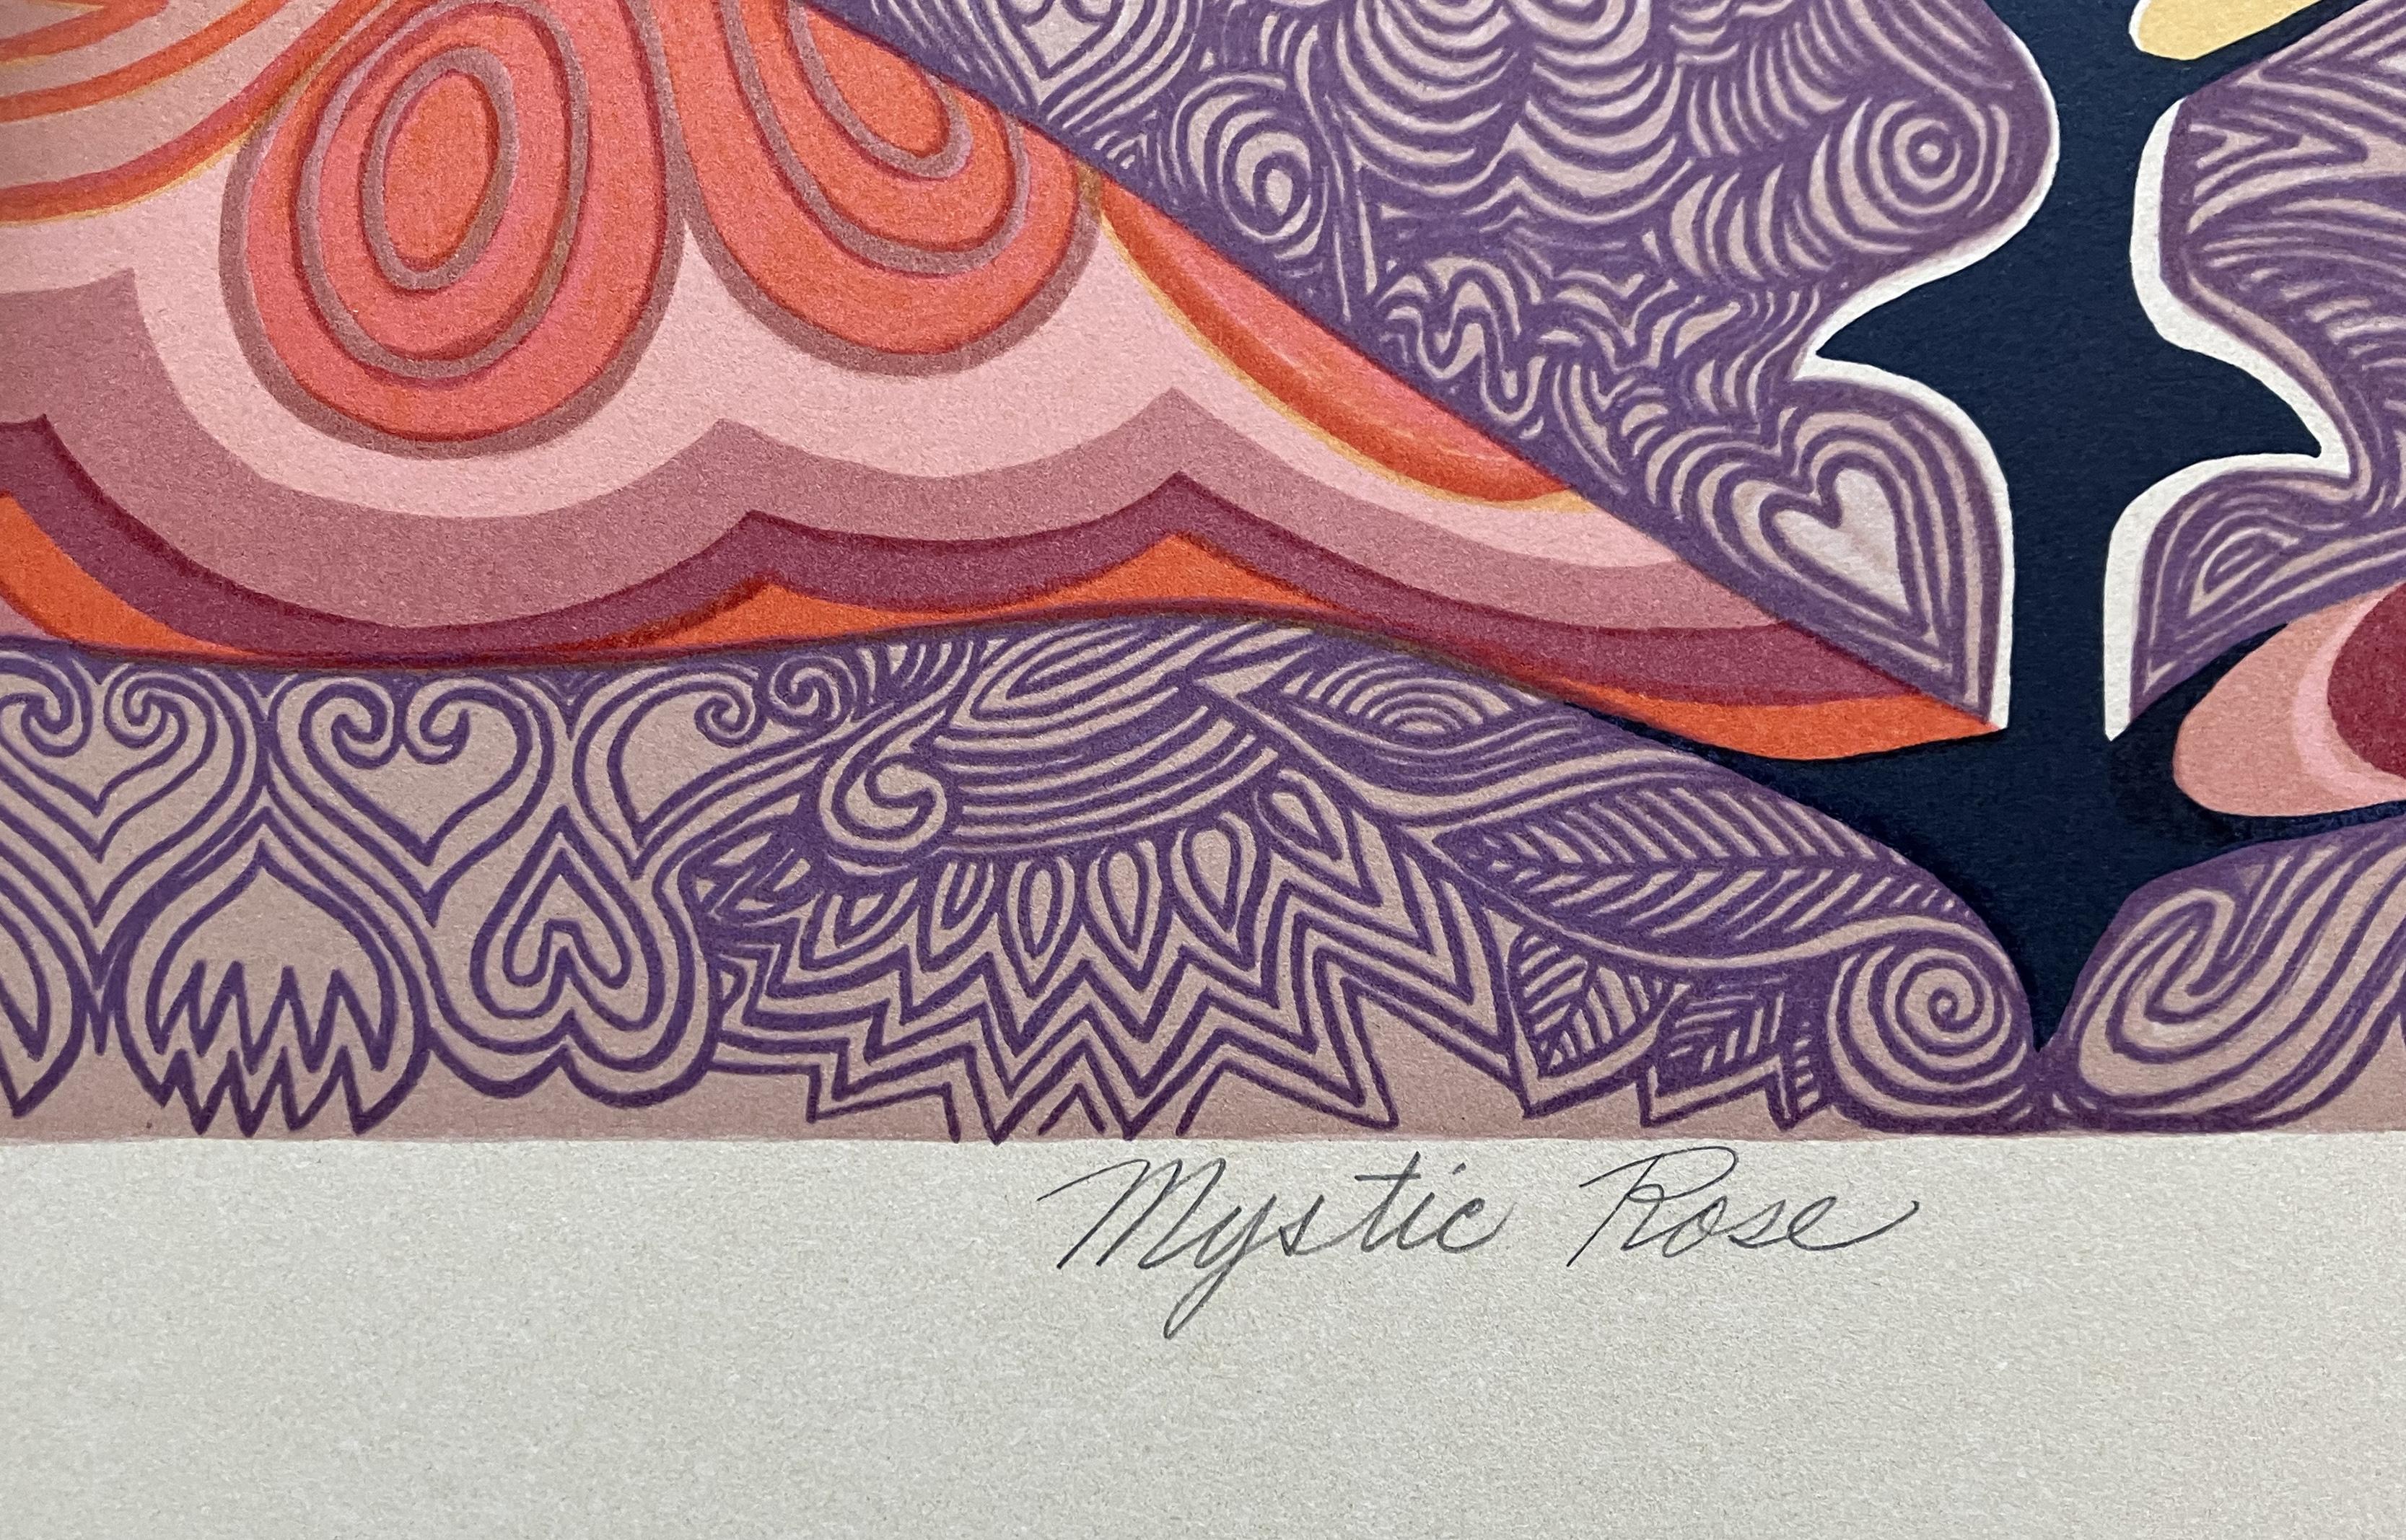 Artistics : Alice Asmar Américaine (1929-  )
Titre : Rose mystique
Année : 1980
Support : Lithographie sur papier BFK Rives
Taille de la vue : 22 x 21 pouces. 
Taille de la feuille : 30 x 22 pouces. 
Signature : Signé en bas à droite
Édition : 115.